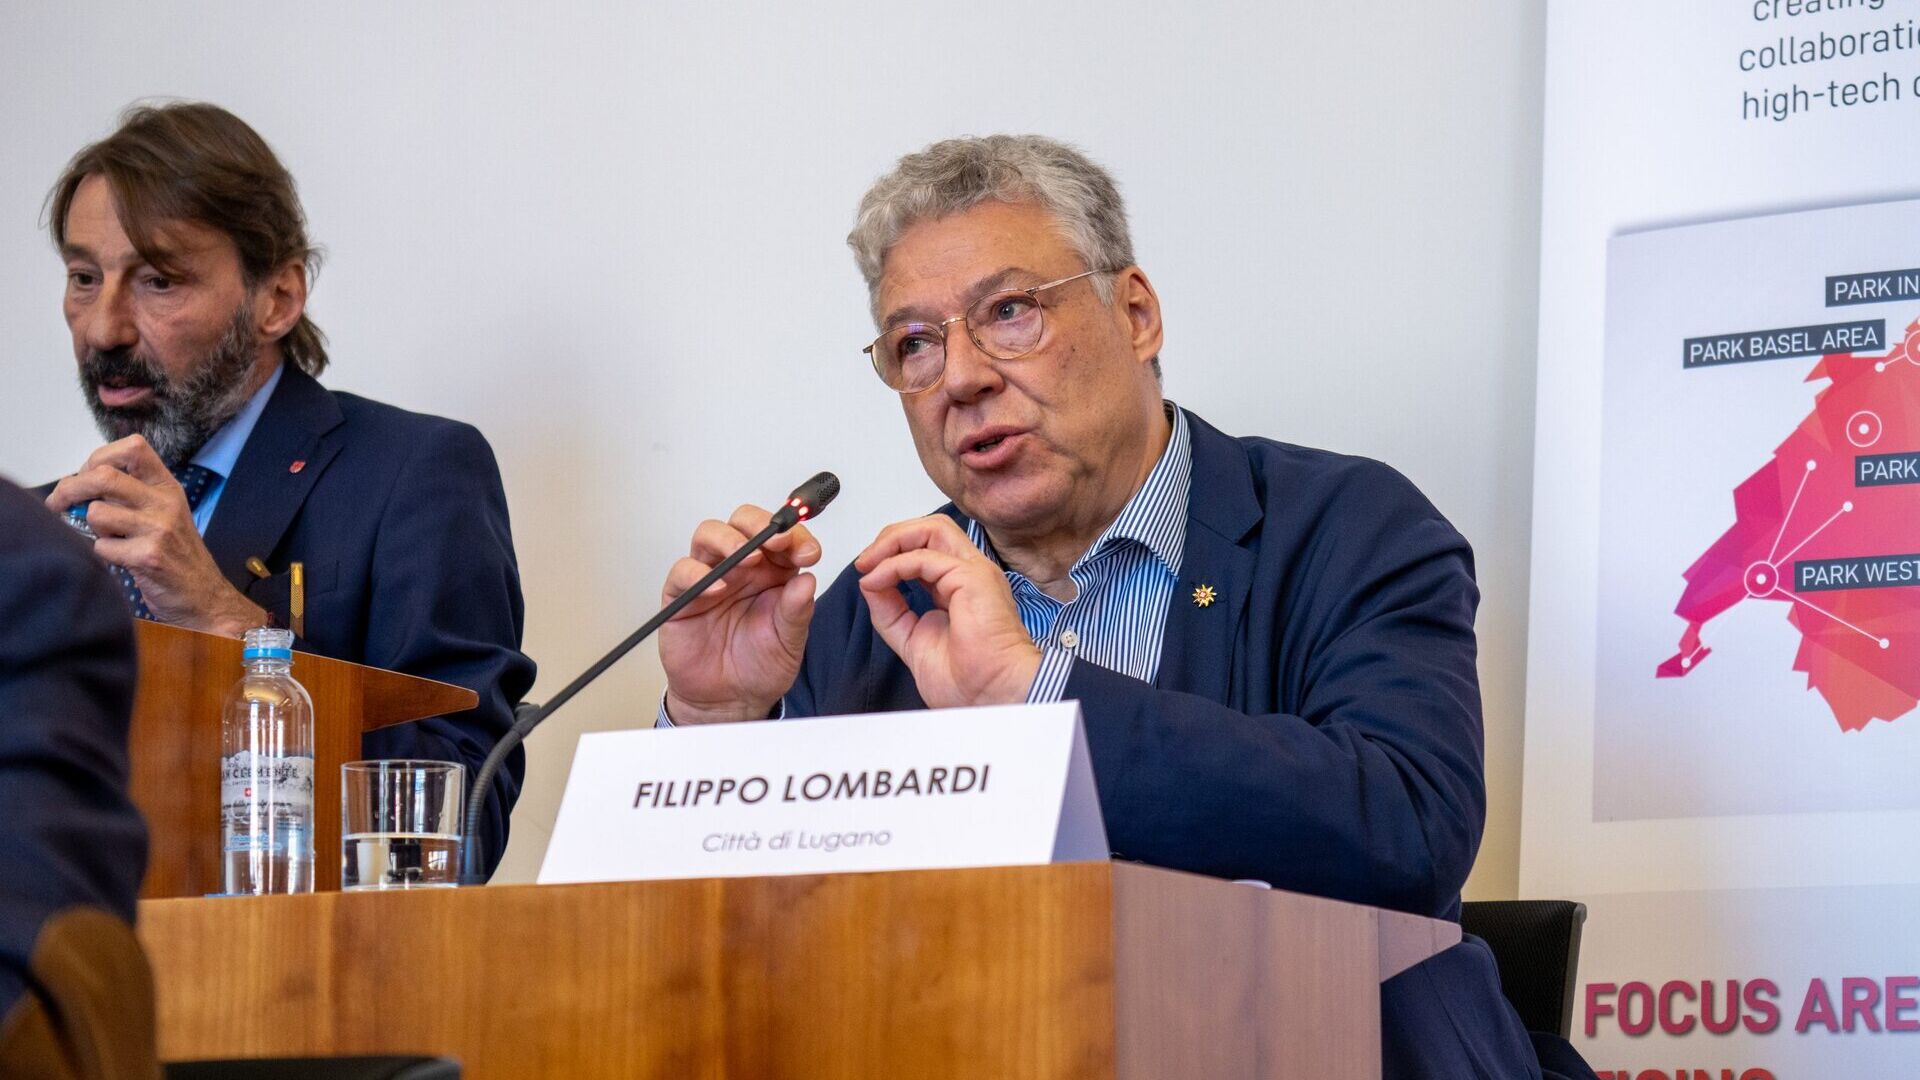 LTCC: Filippo Lombardi je mestským radcom a vedúcim oddelenia územného rozvoja mesta Lugano